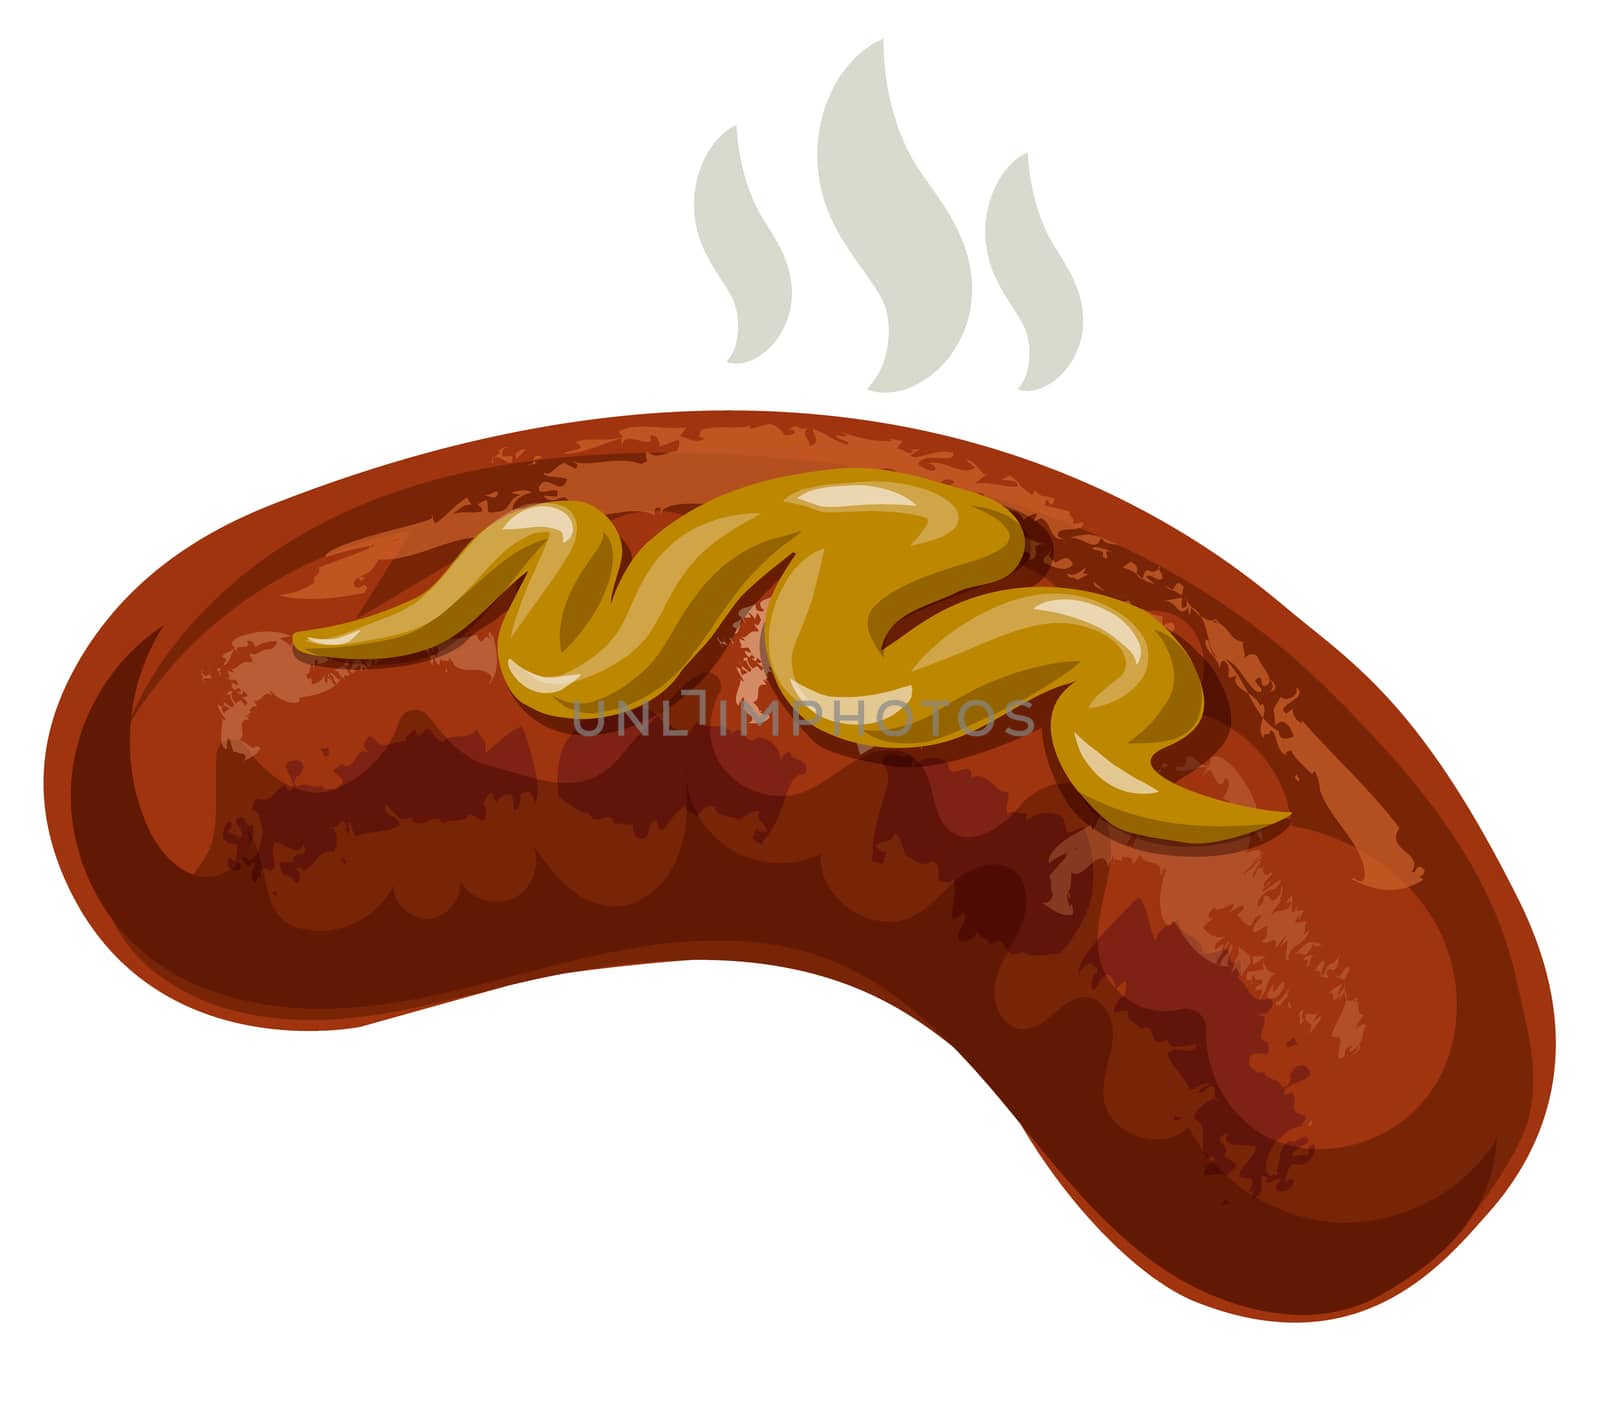  sausage with mustard by olegtoka